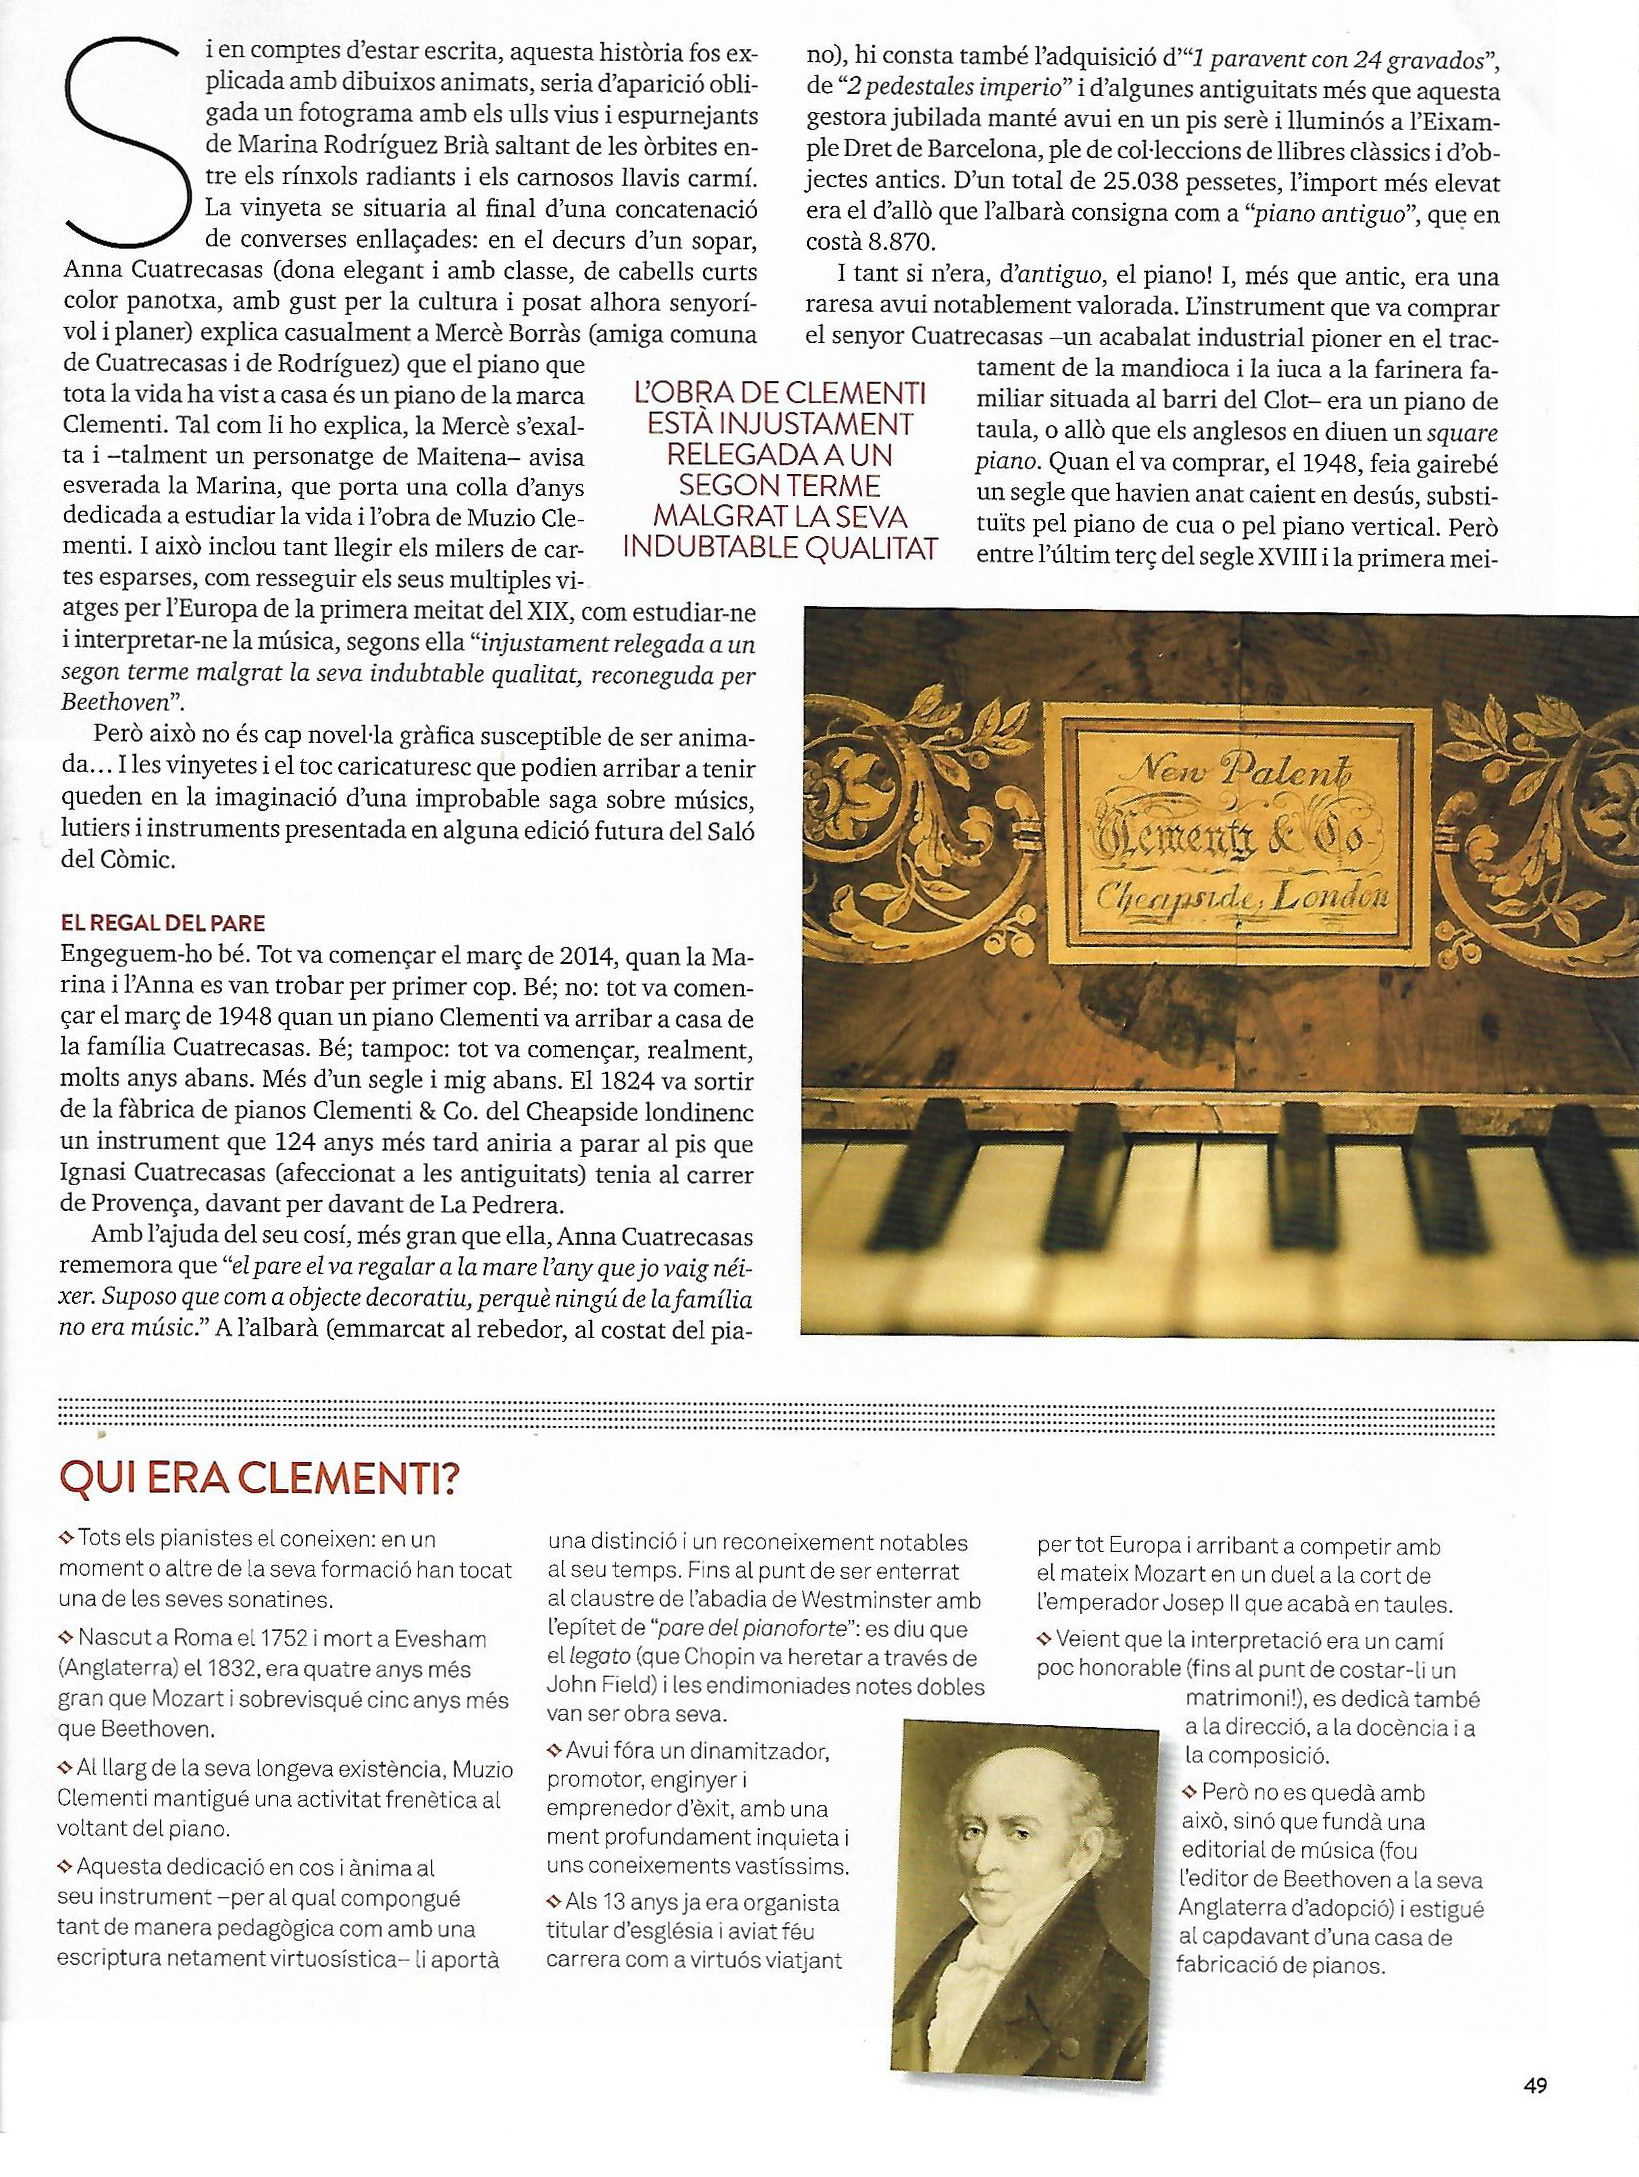 Revista Musical Catalana n348 p49